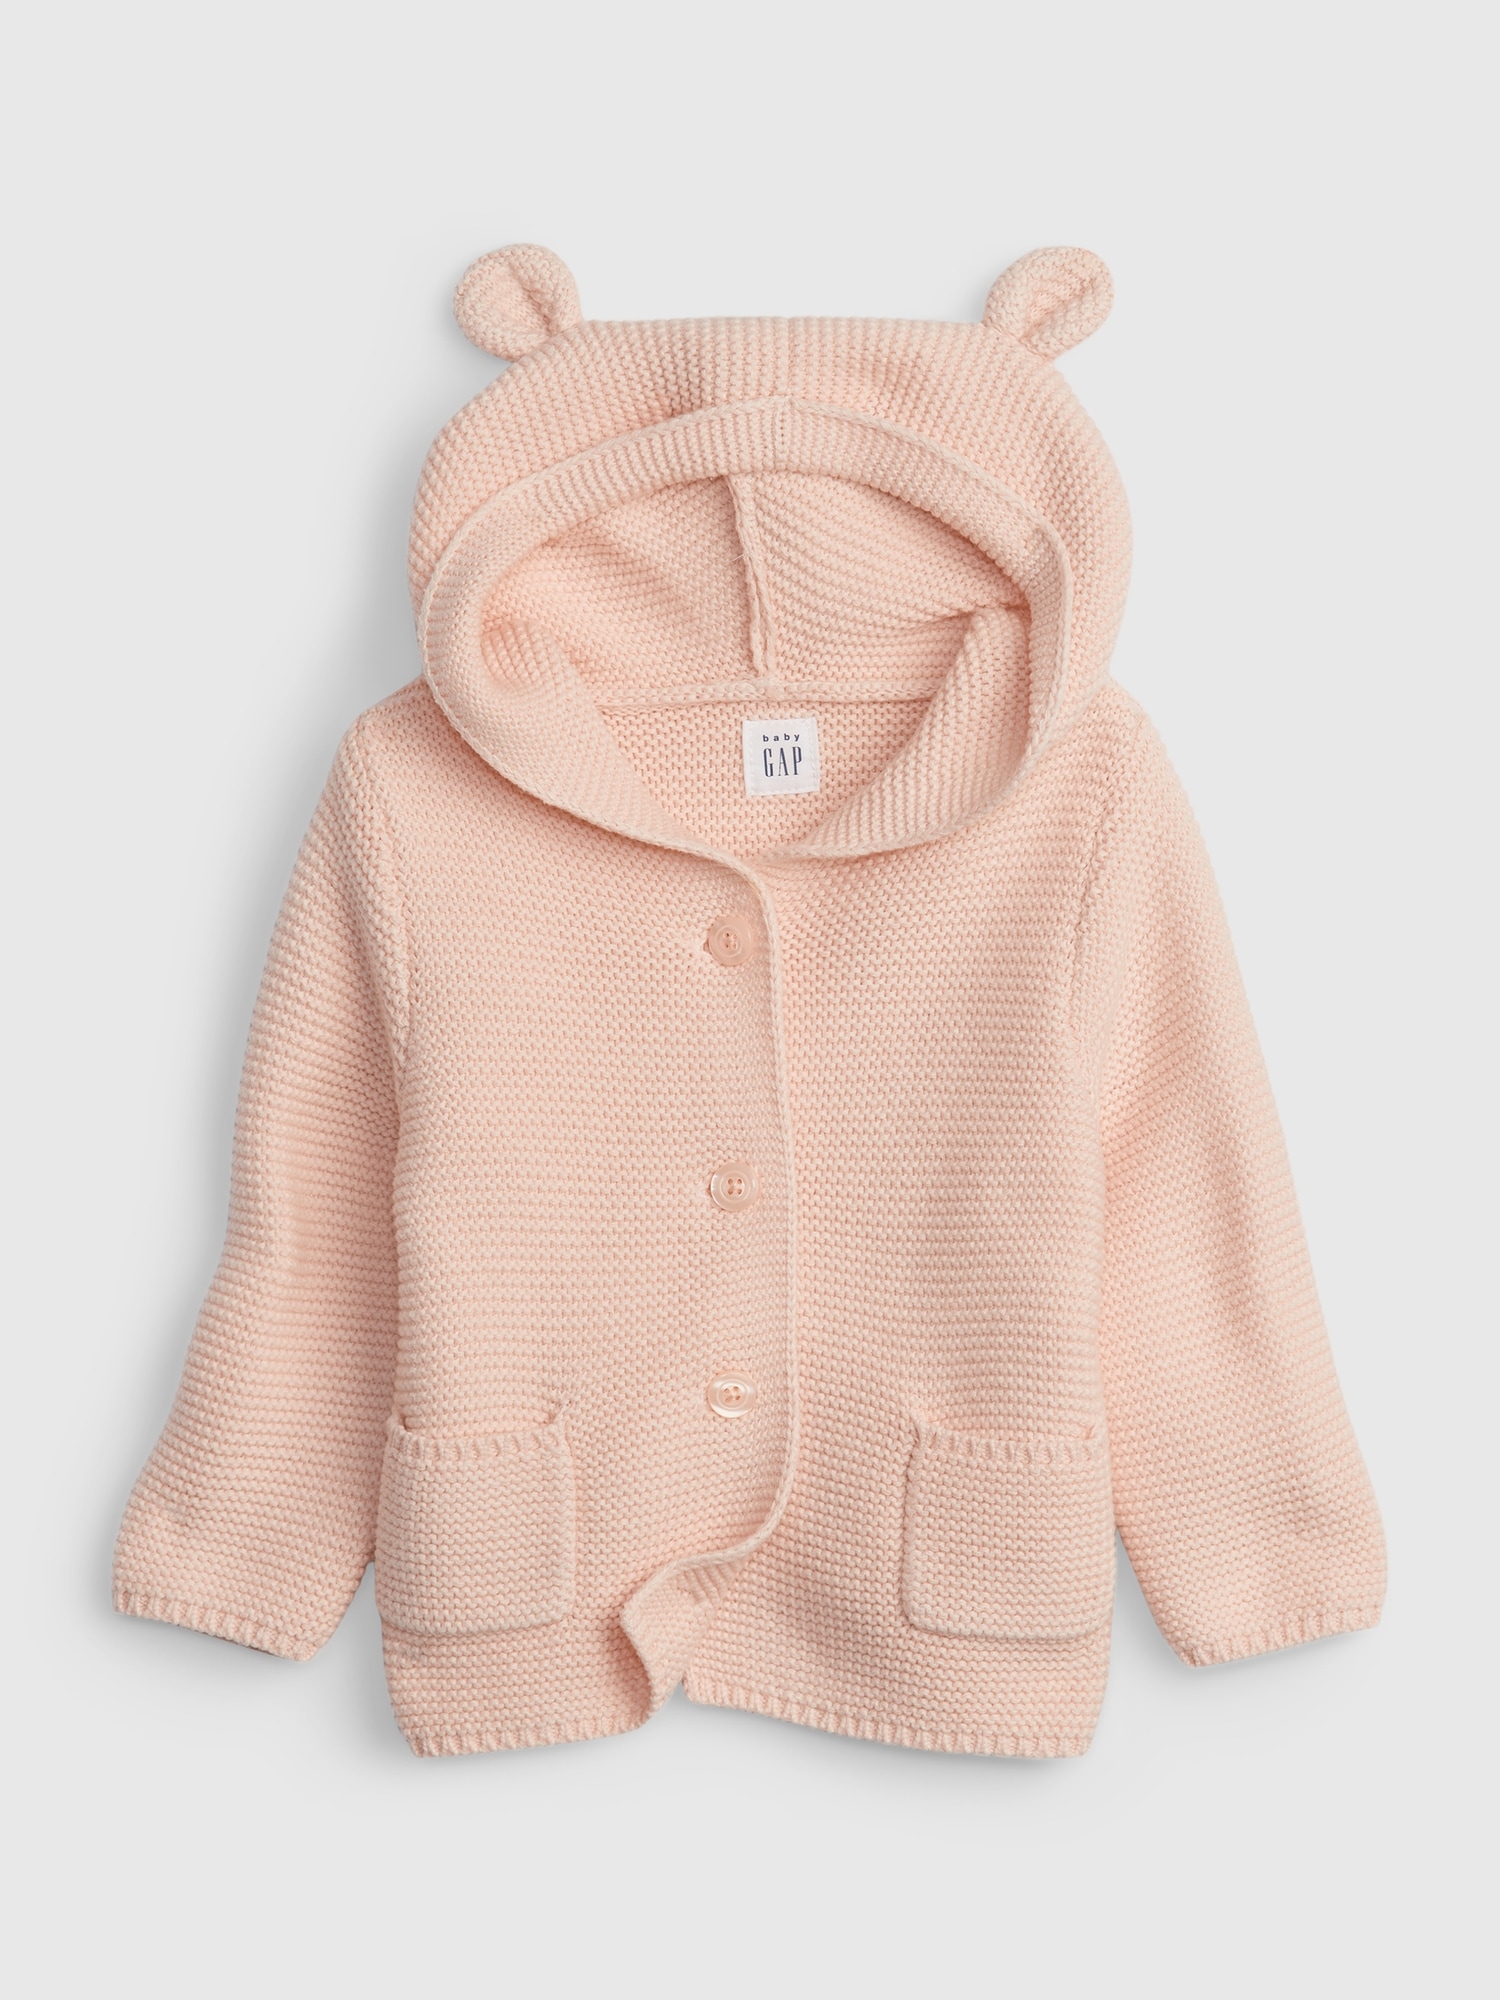 Girl 0-3 Months Tan Brown Bear Cardigan Hoodie Sweater w/Ears GAP Baby Boy 